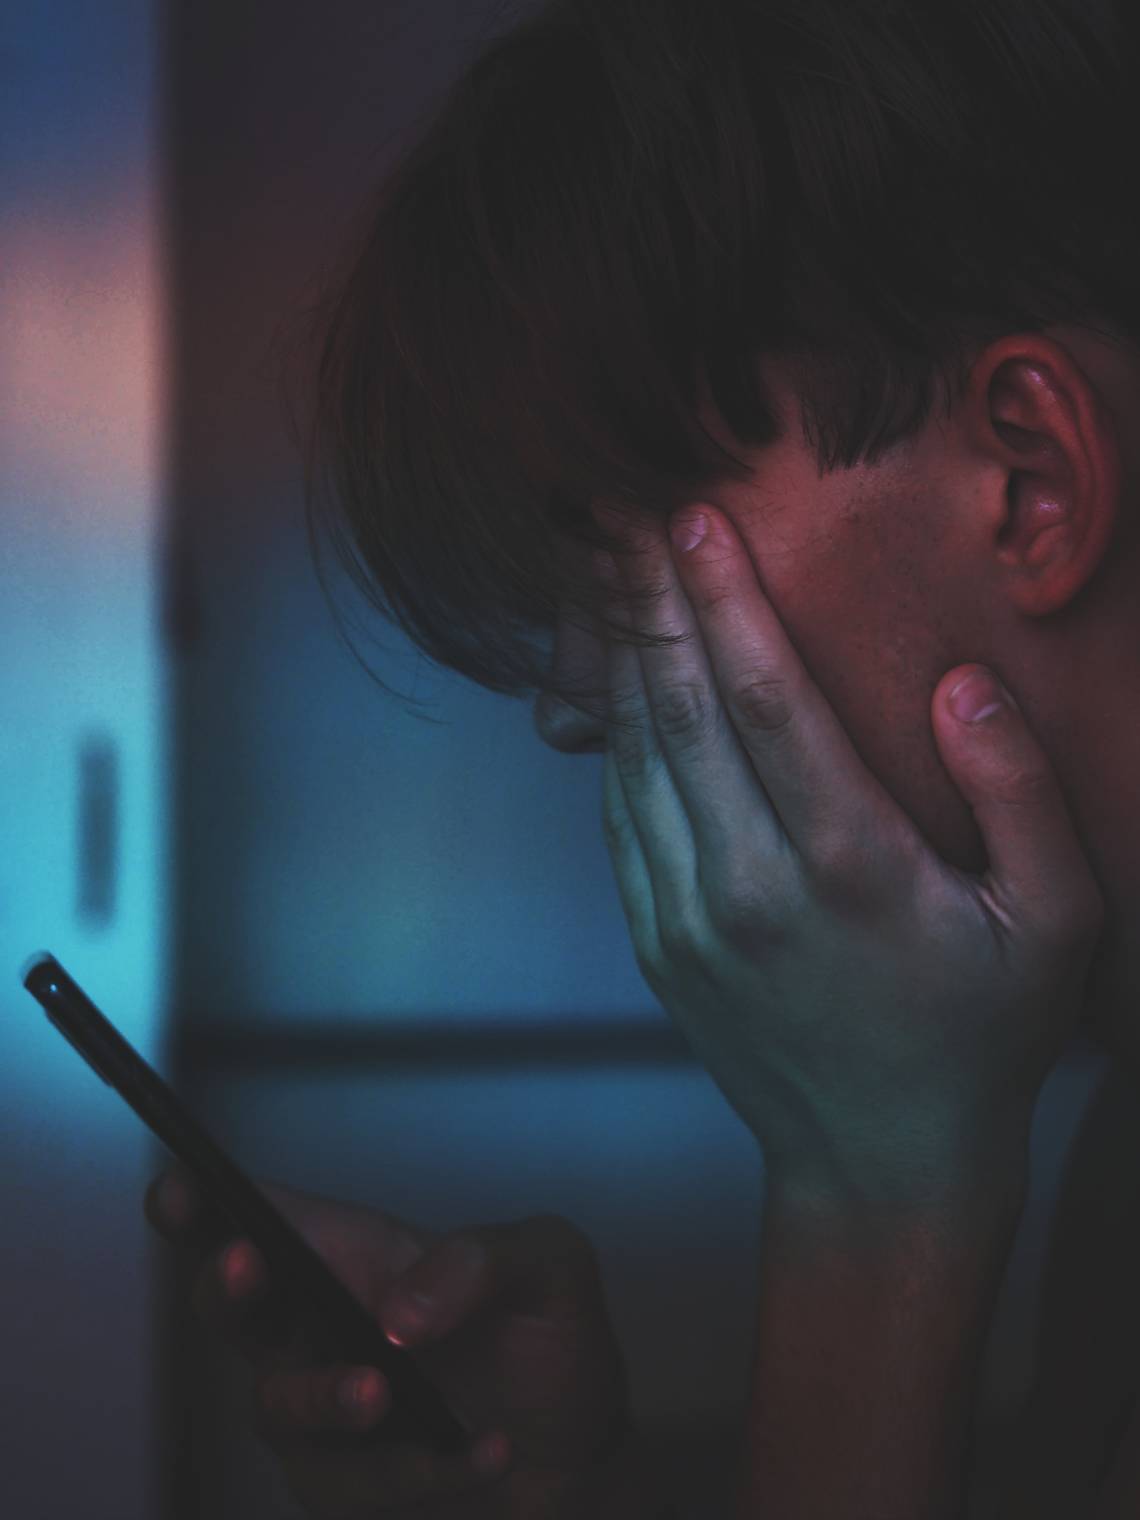 Ein junger Mann hält sein Mobile Phone in dunkelm Licht vor dem Gesicht und reibt sich mit der anderen Hand die Augen. | © Adrian Swancar via Unsplash